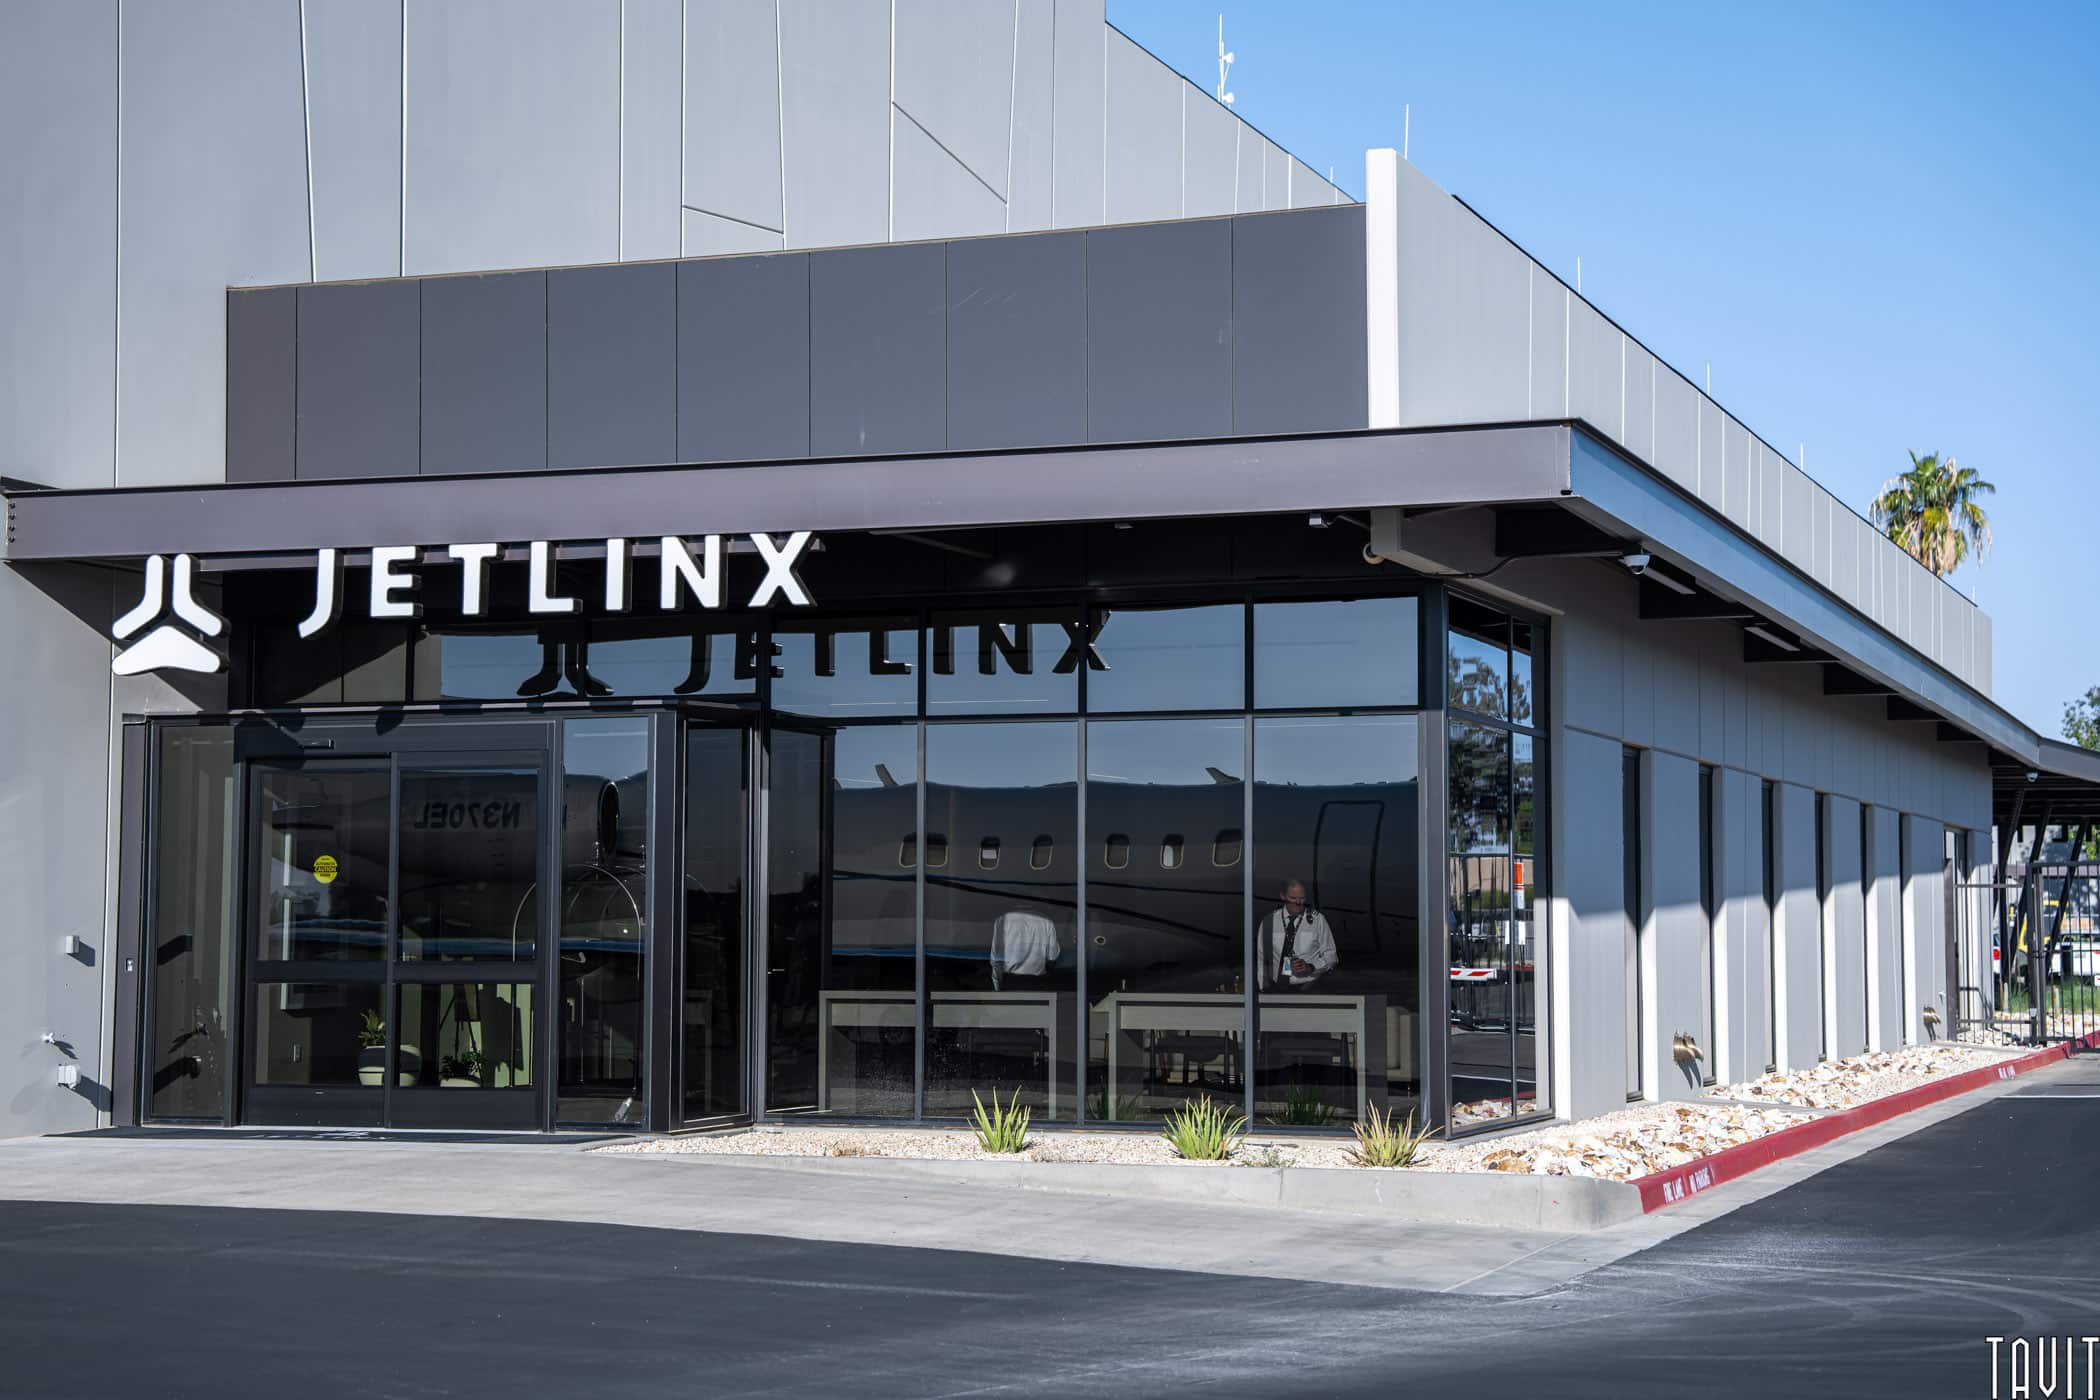 Jetlinx building exterior